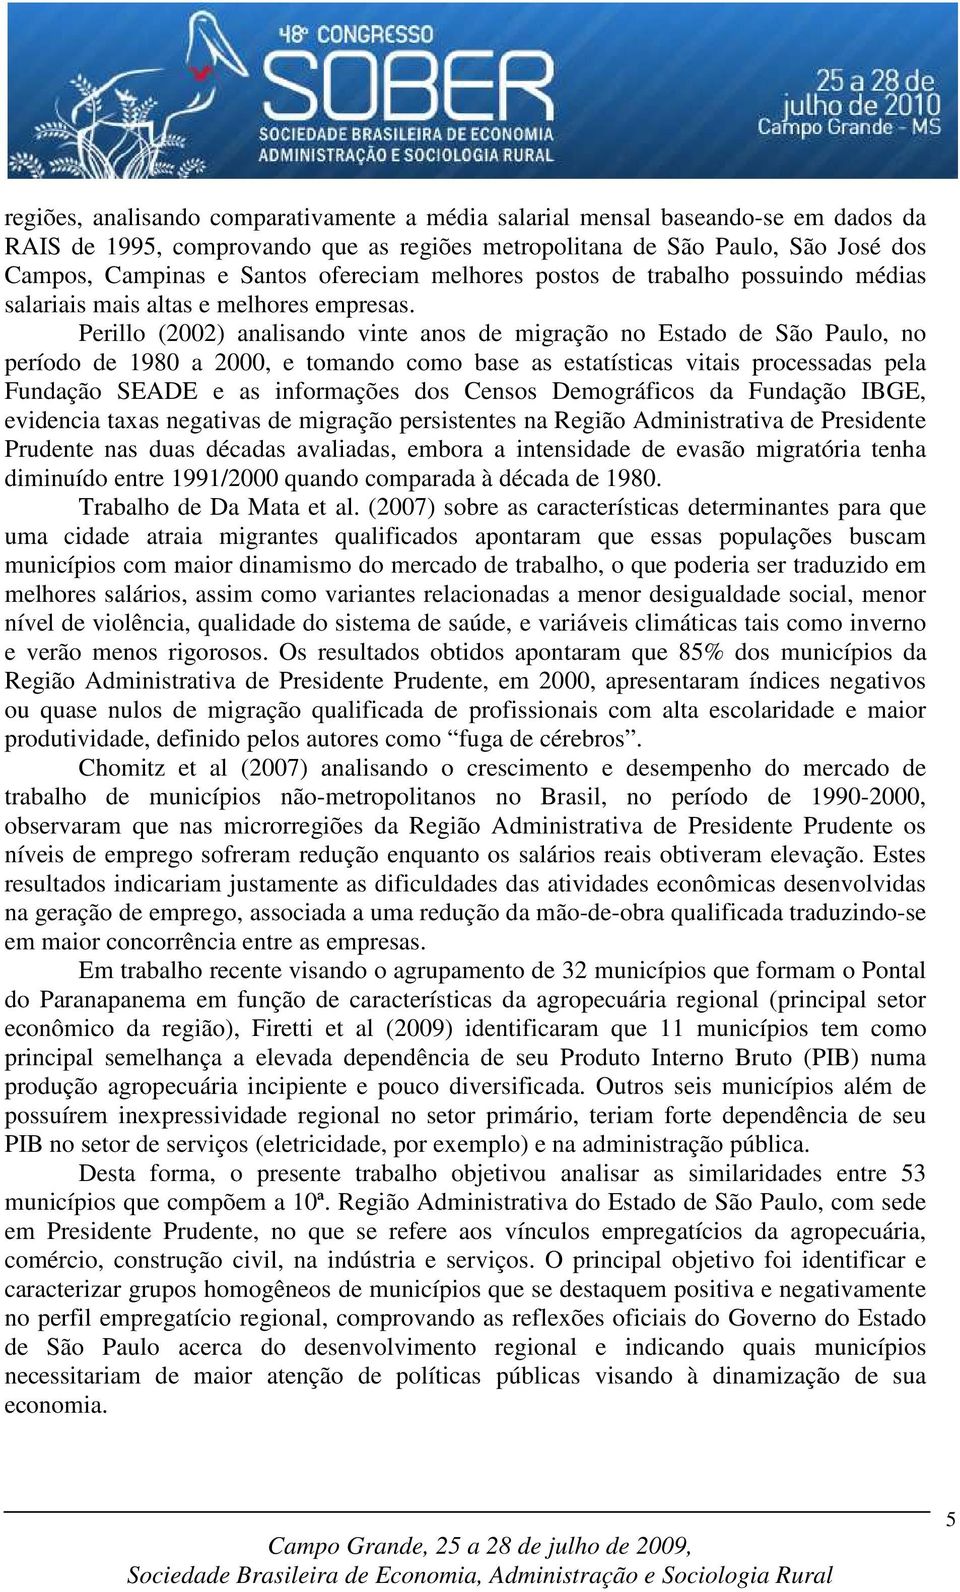 Perillo (2002) analisando vinte anos de migração no Estado de São Paulo, no período de 1980 a 2000, e tomando como base as estatísticas vitais processadas pela Fundação SEADE e as informações dos